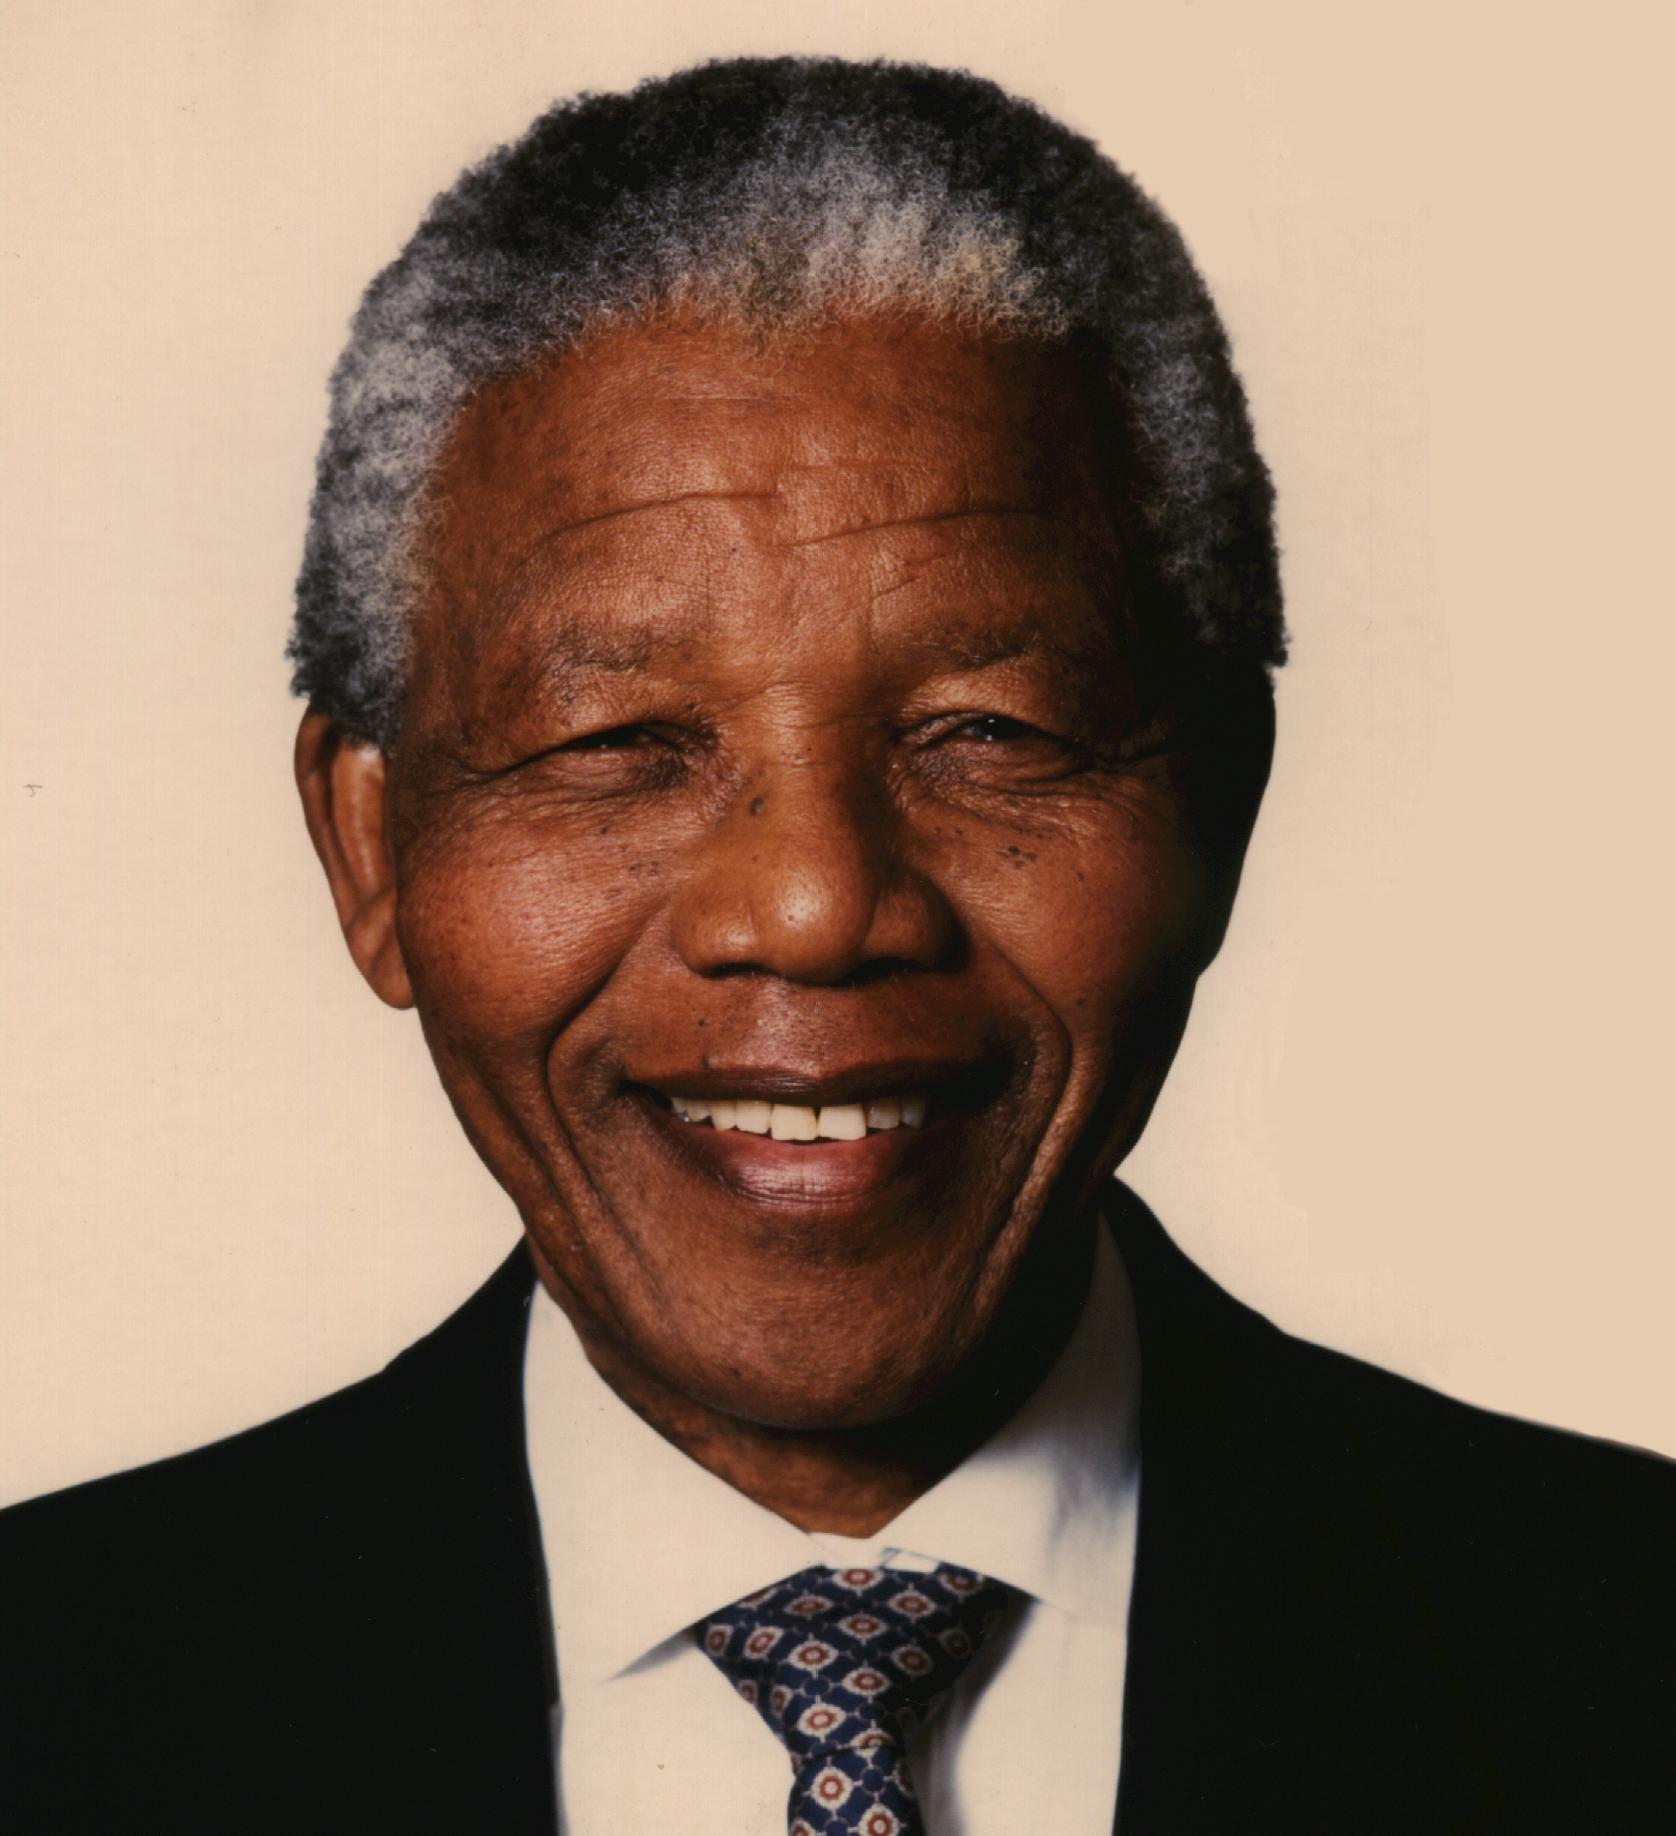 جوجل يحتفل بذكرى ميلاد نيلسون مانديلا 2014